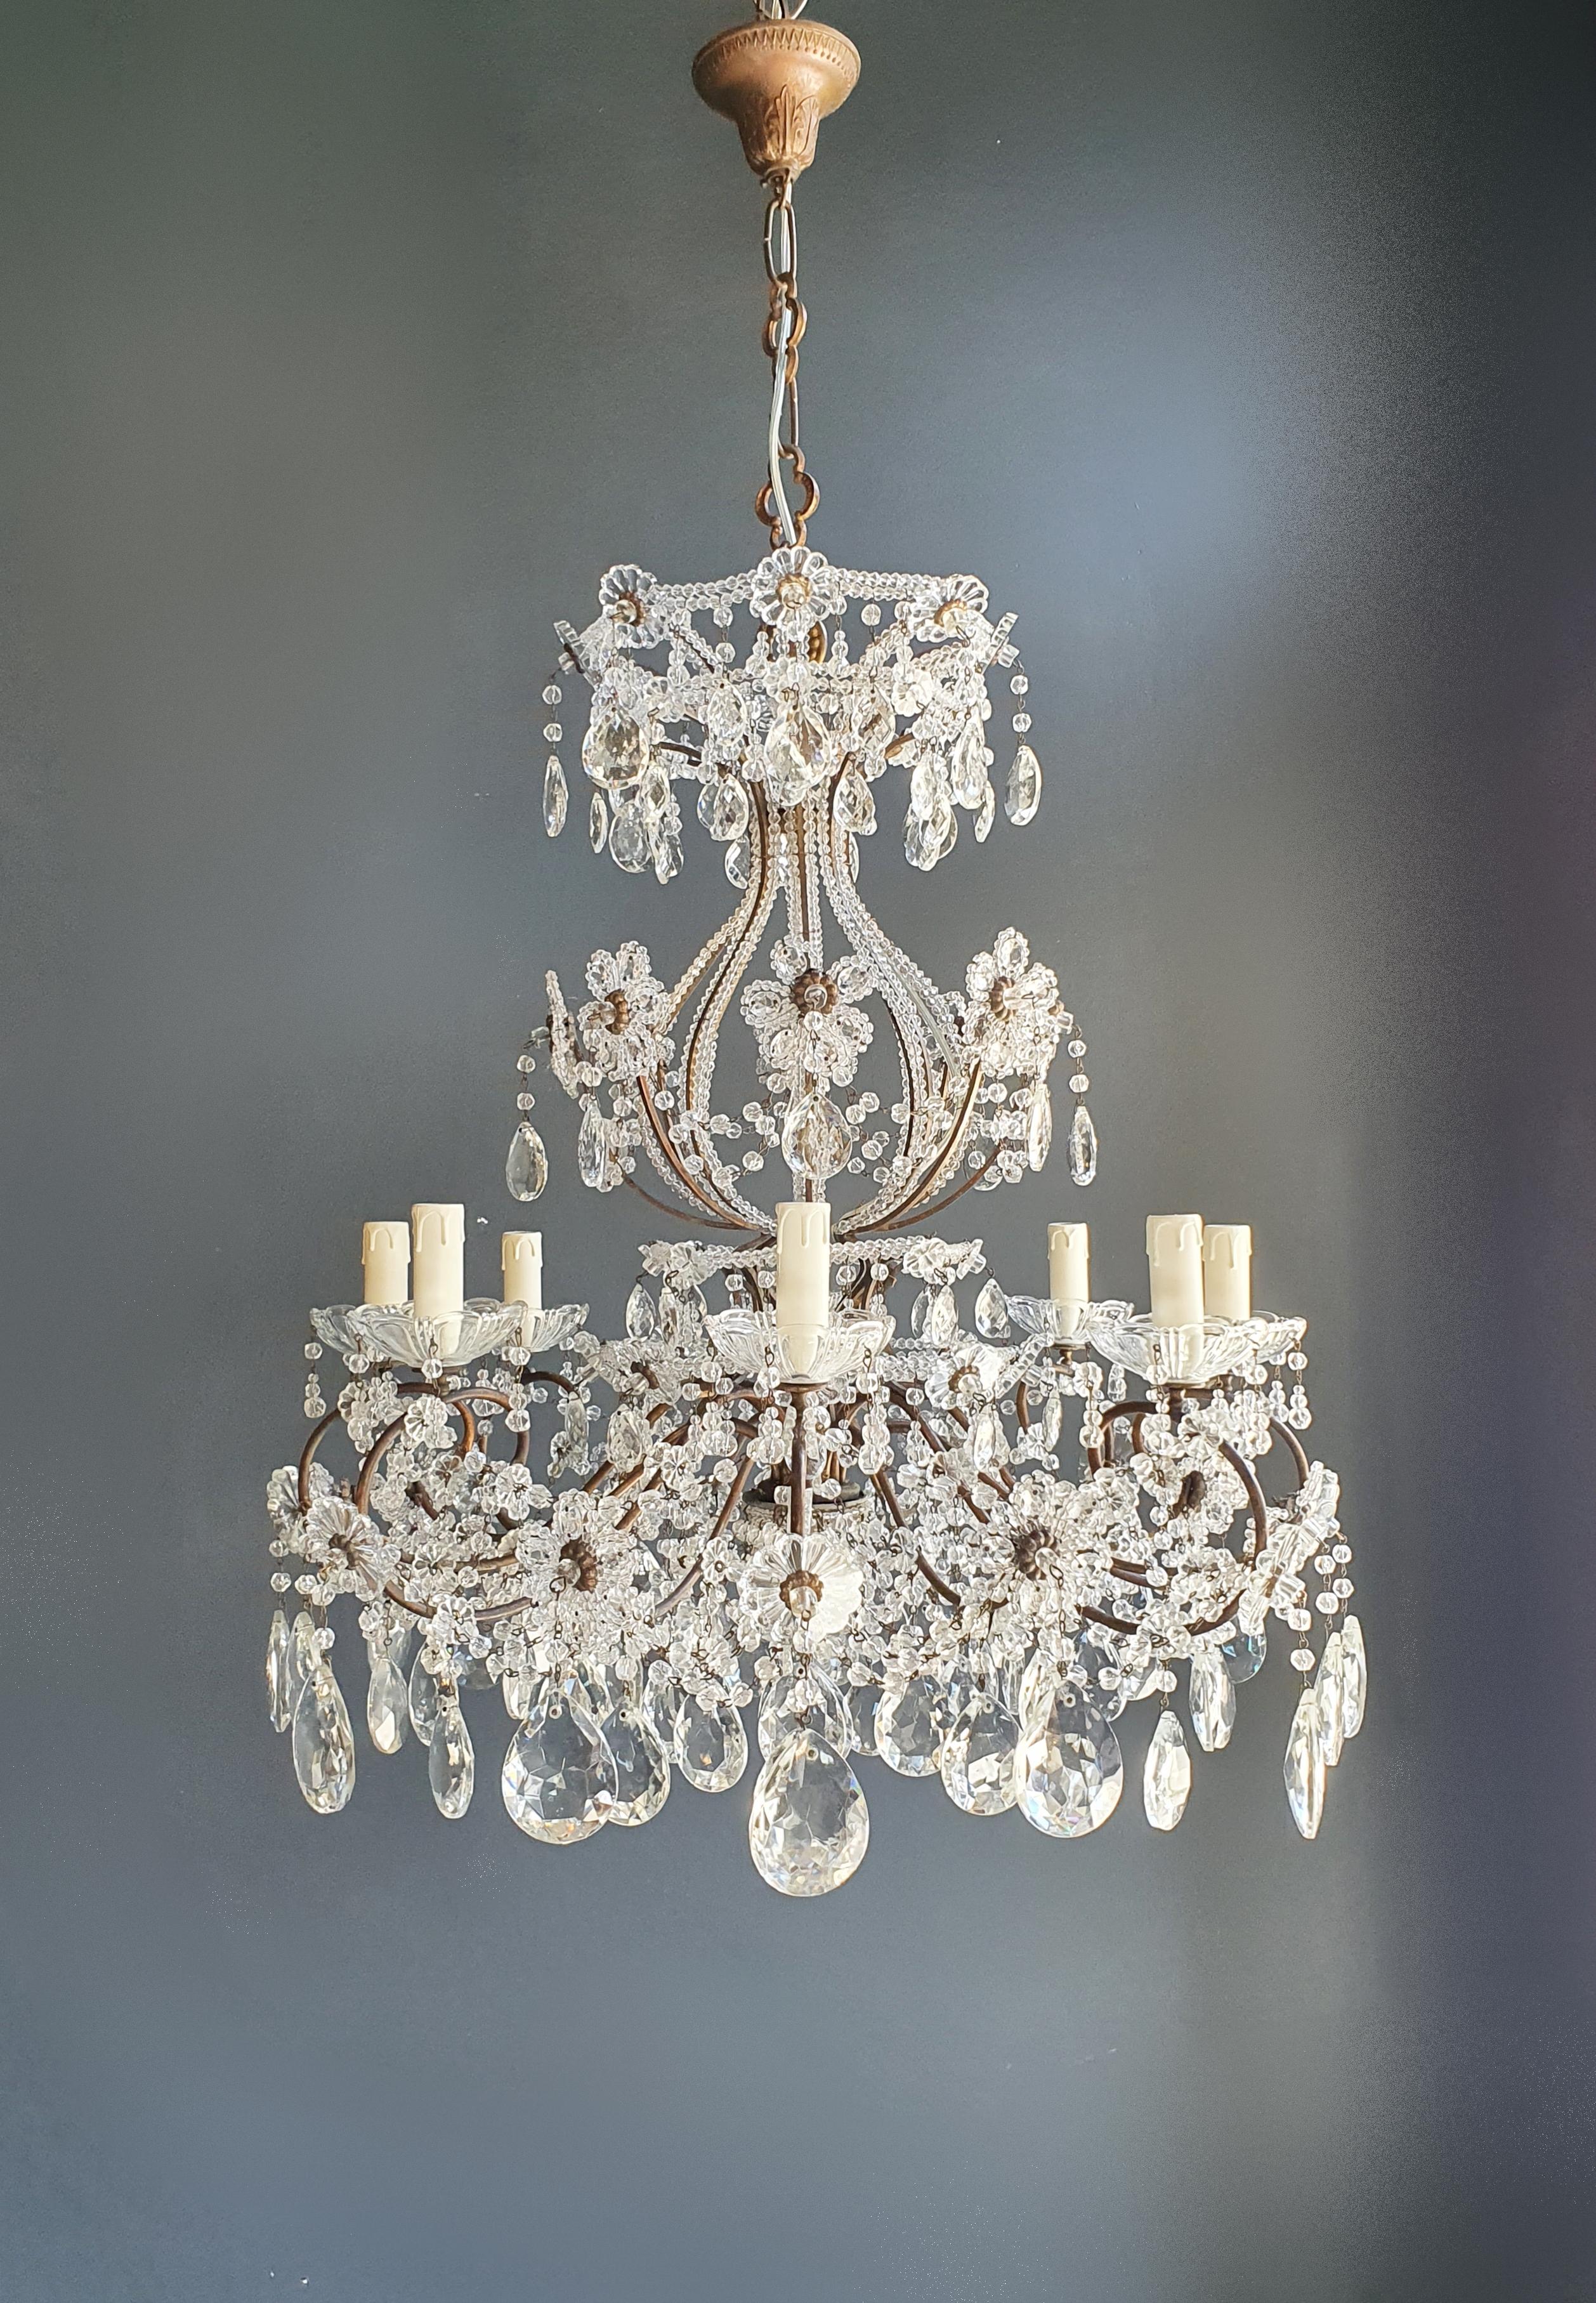 Brass Crystal Chandelier Antique Ceiling Lamp Lustre Art Nouveau Lamp 4